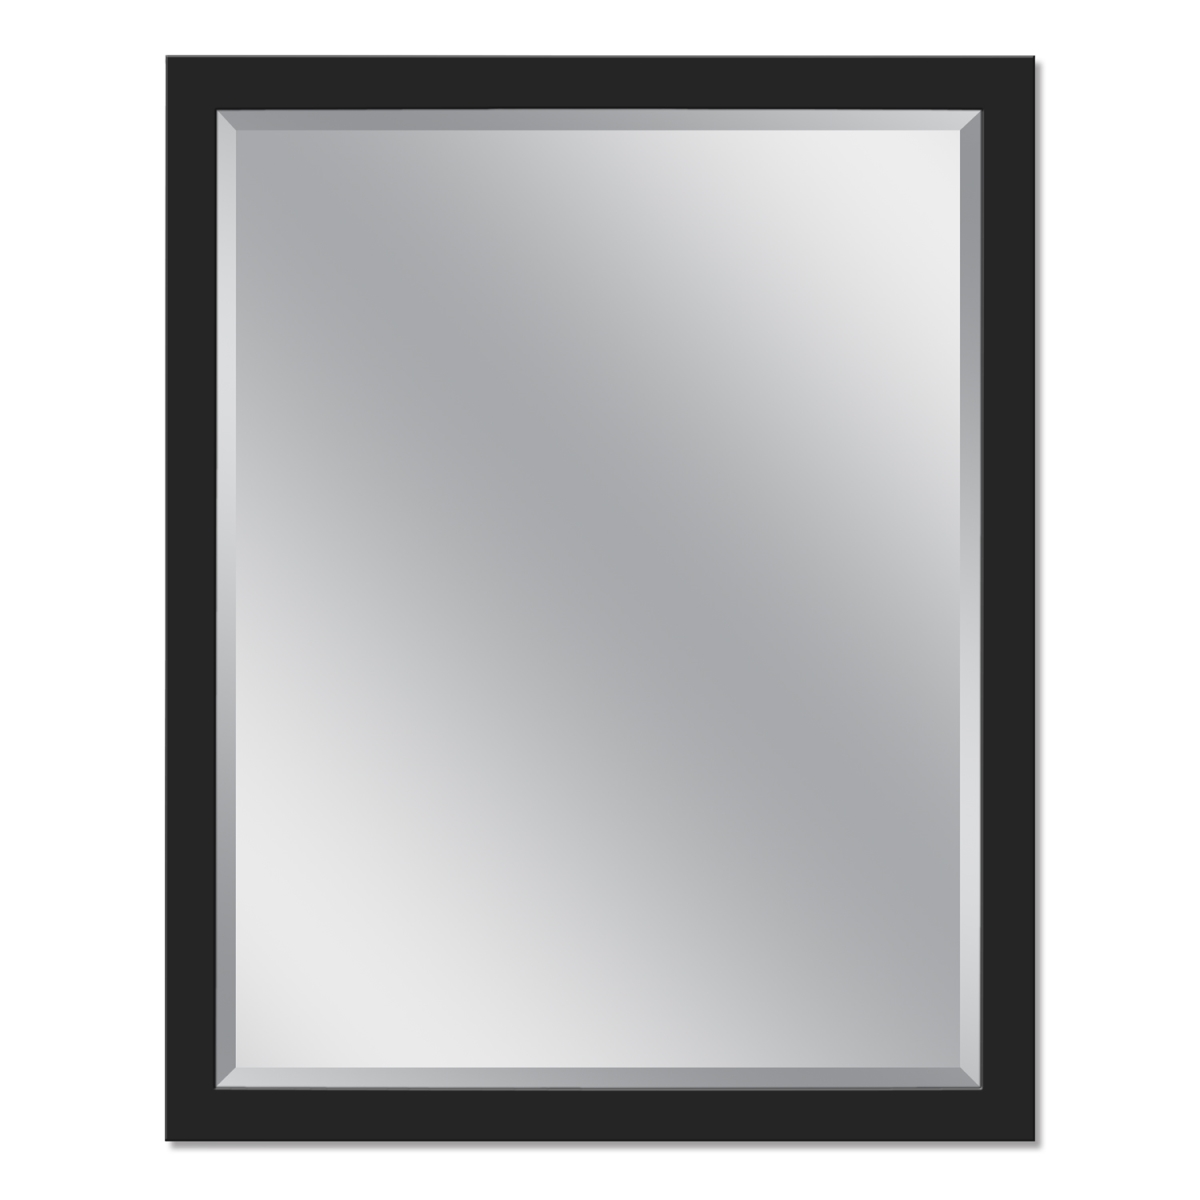 Head West 8252 24 X 30 In. Stainless Steel Single Framed Wall Mirror - Matte Black